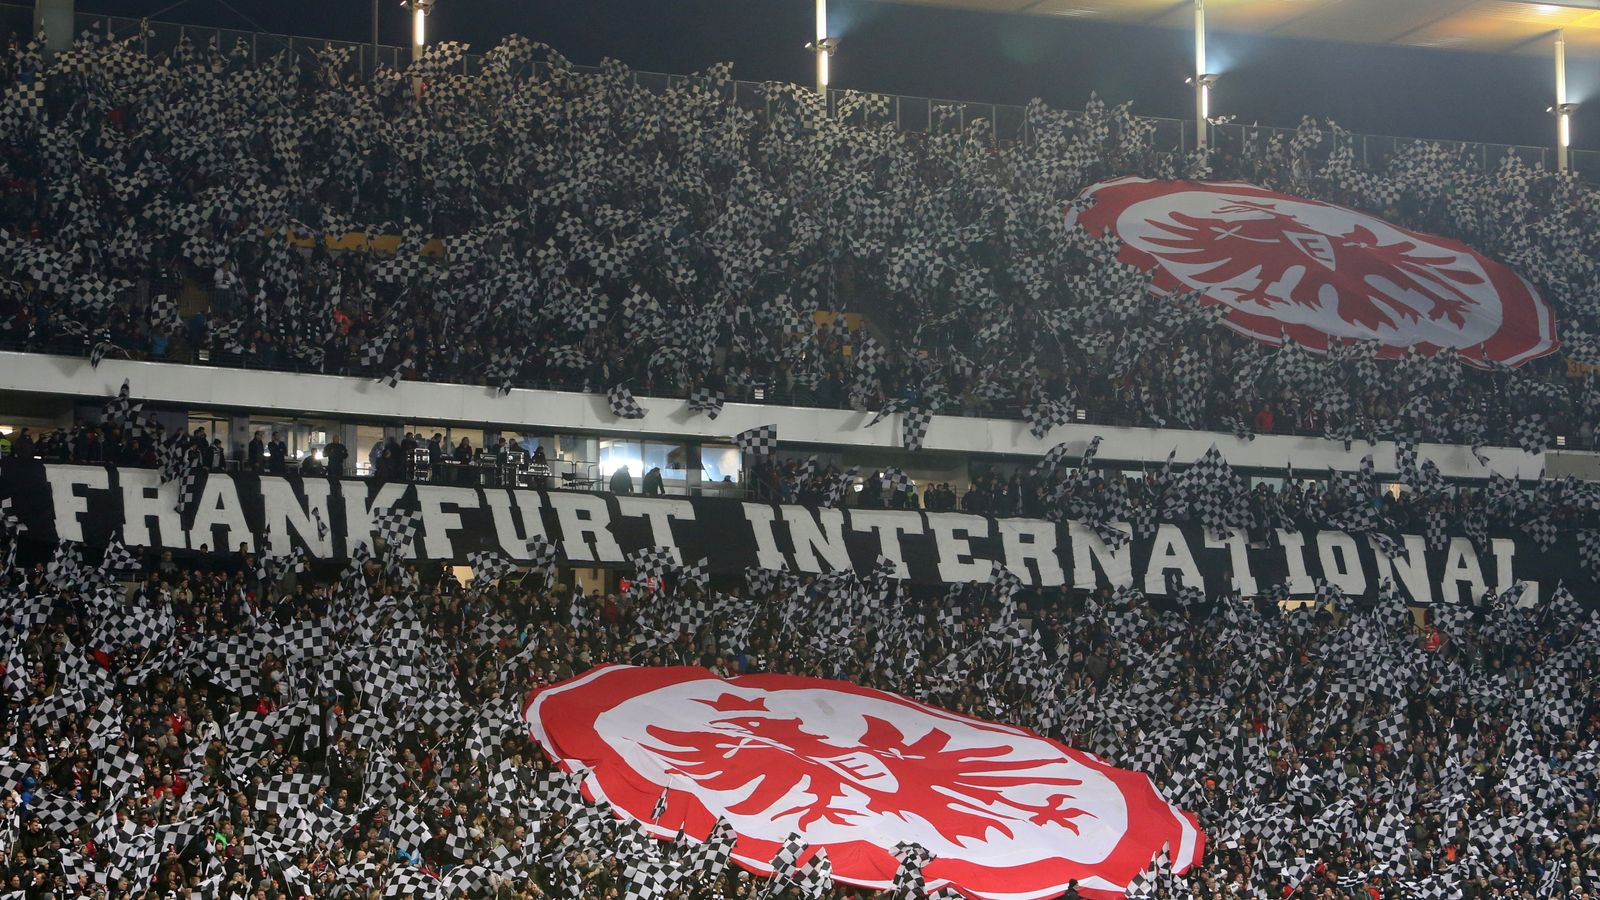 Heimspiele Eintracht Frankfurt